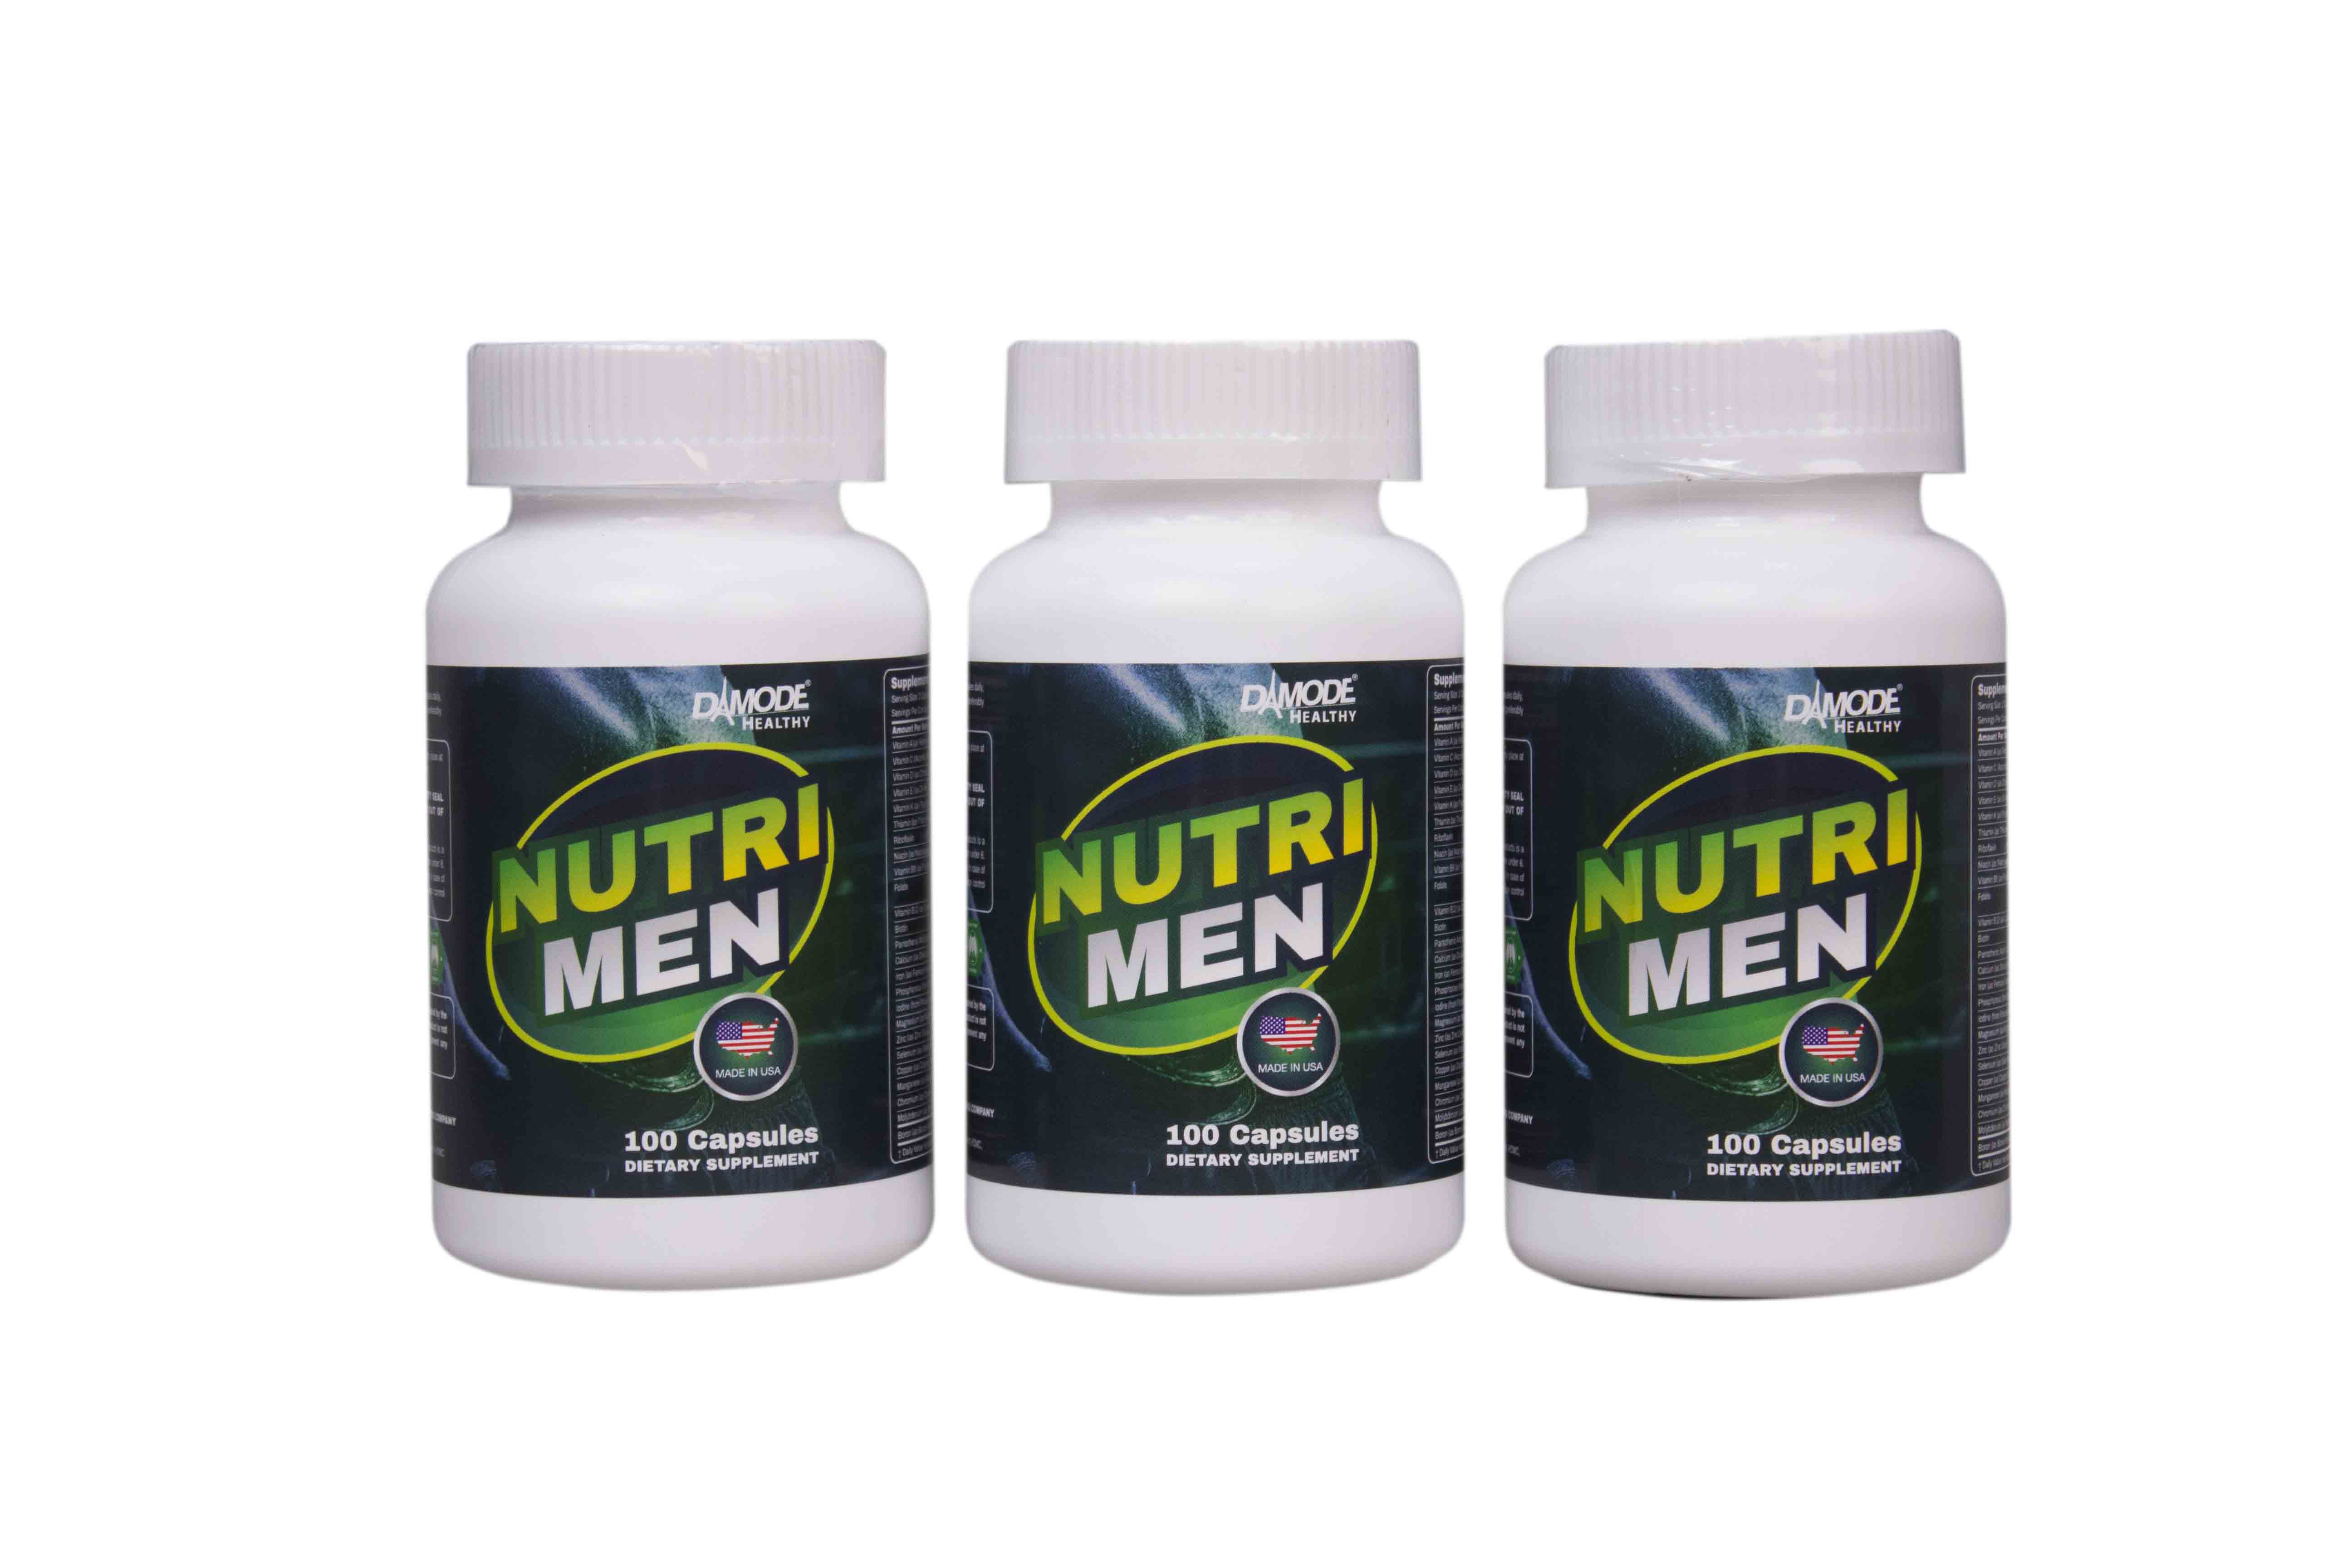 Vitamin, khoáng chất, tăng sức đề kháng cho Nam - Nutri Men